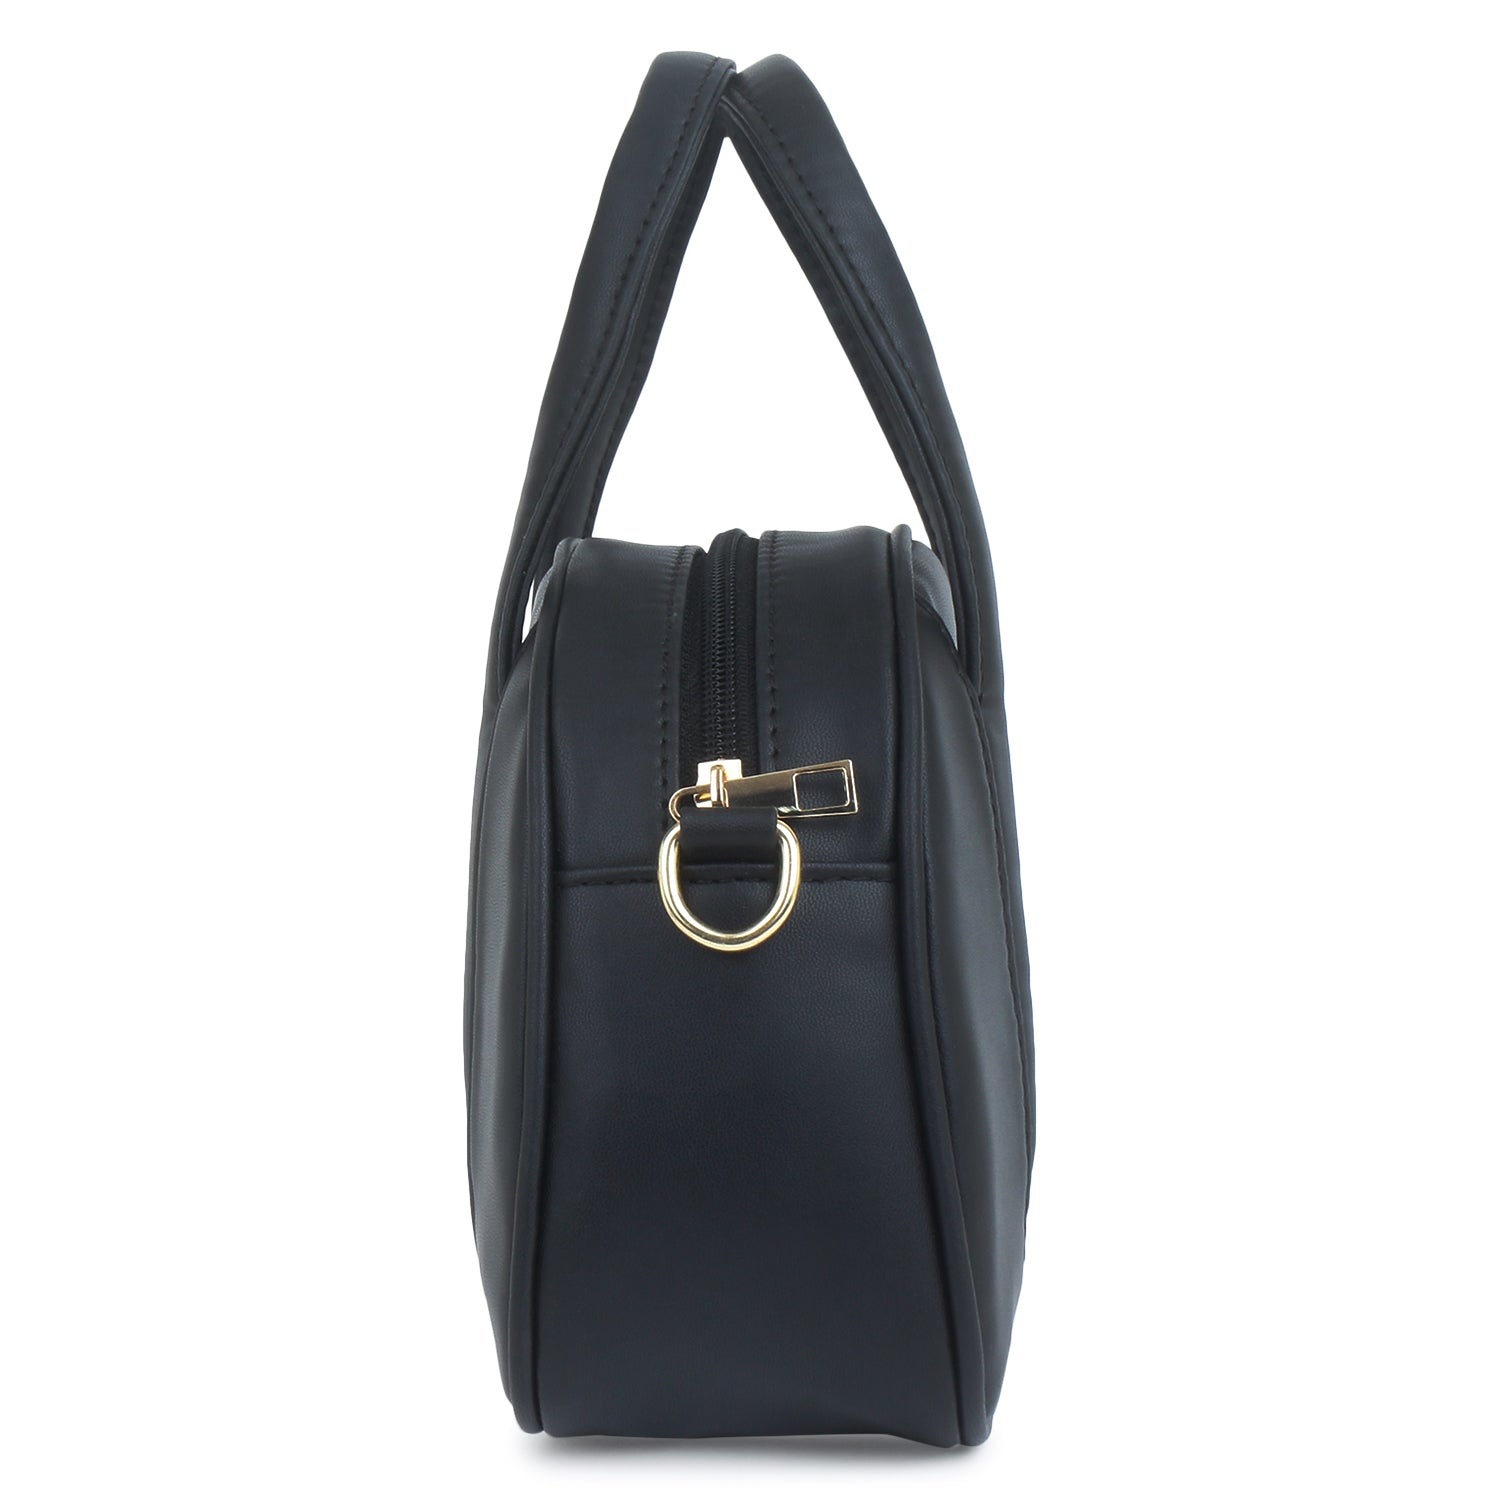 Evening Party Small Handbag in Black